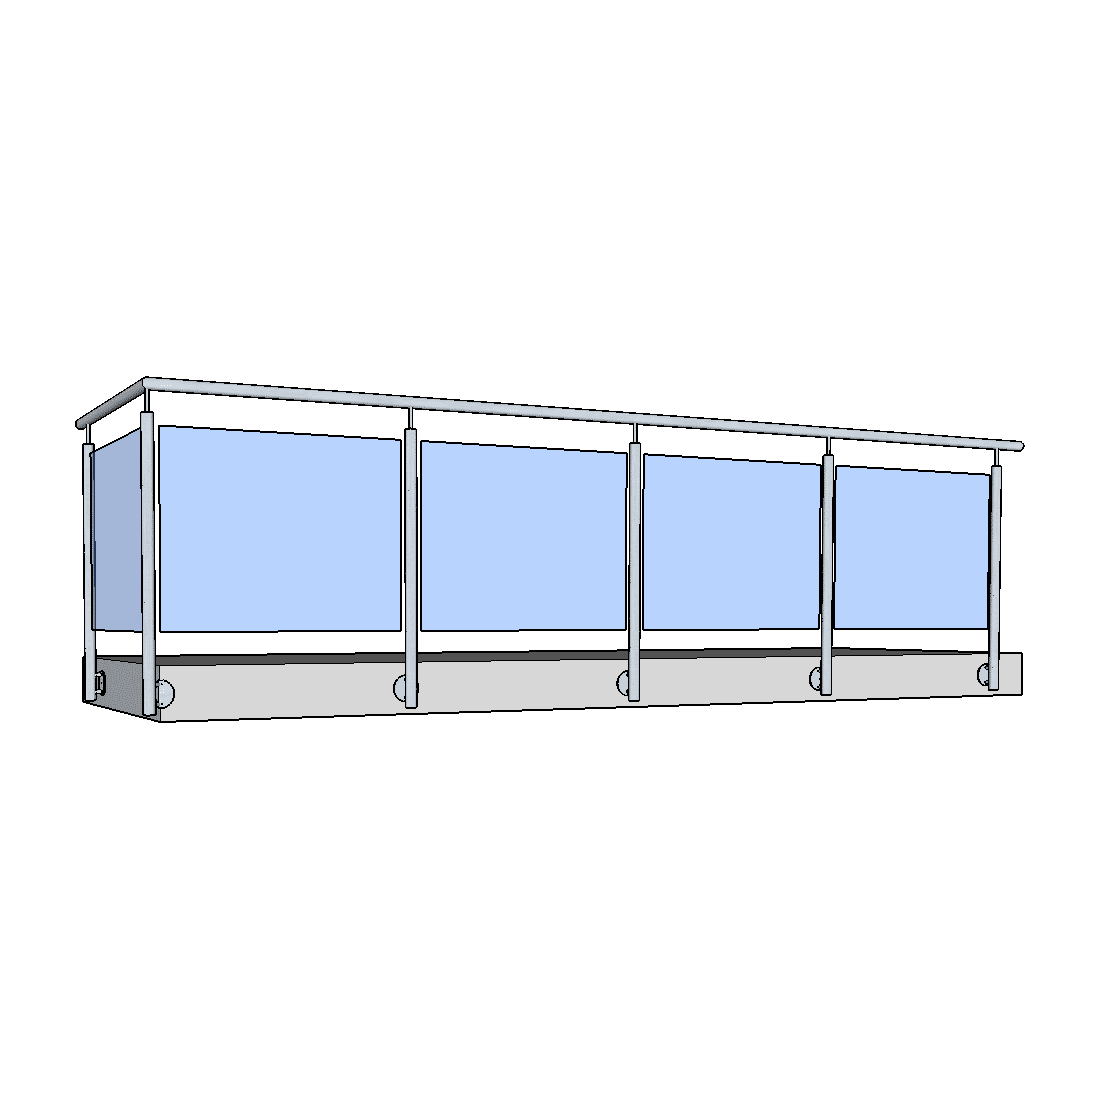 balkon-ideen-gelaender-vogel-teelichthalter-aschenbecher-glas-metall-orange